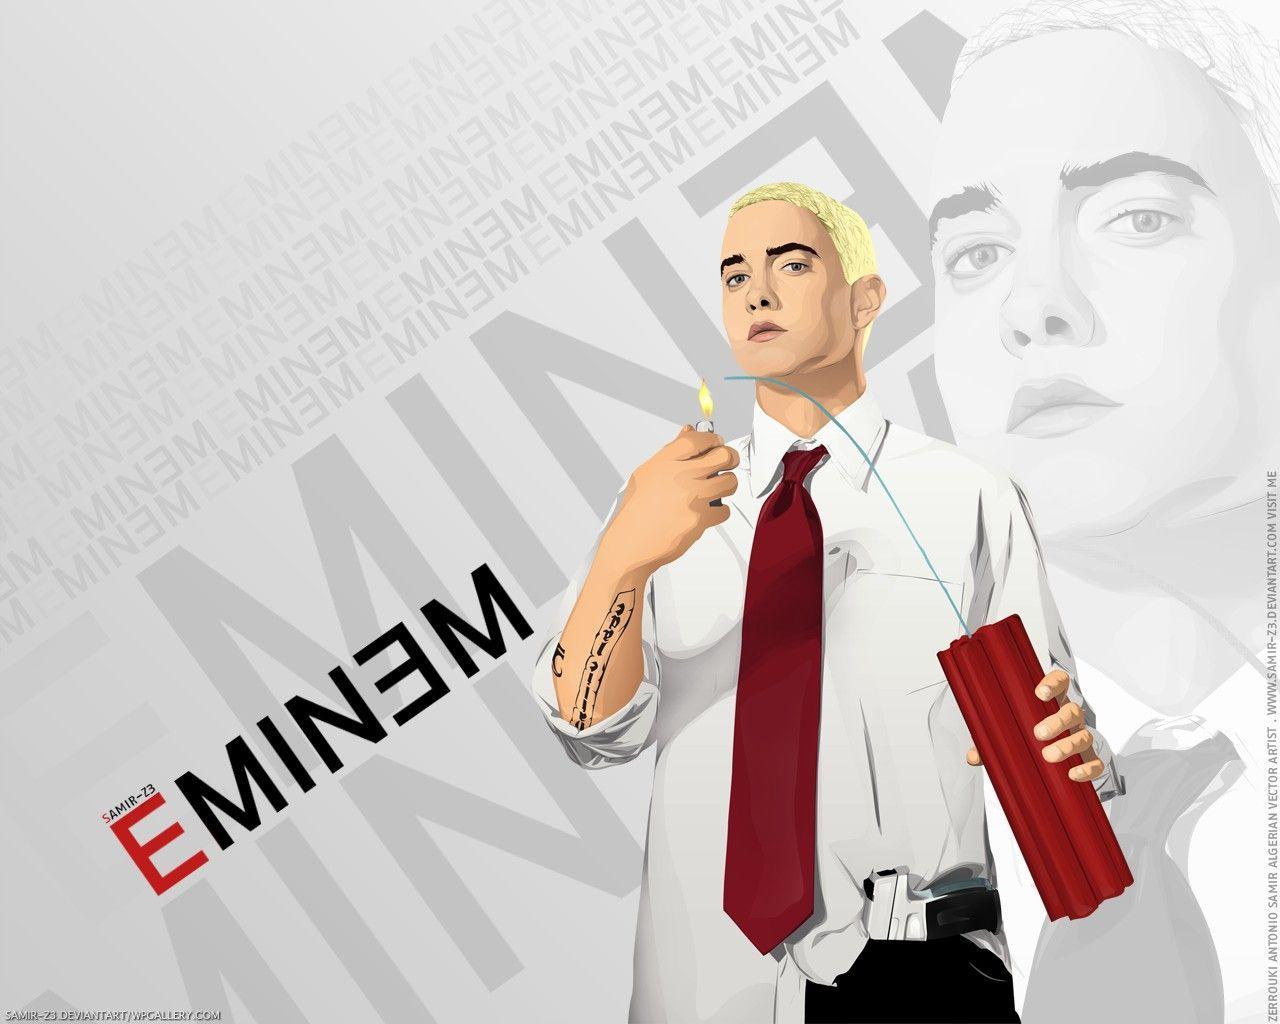 Eminem wallpaper. PC